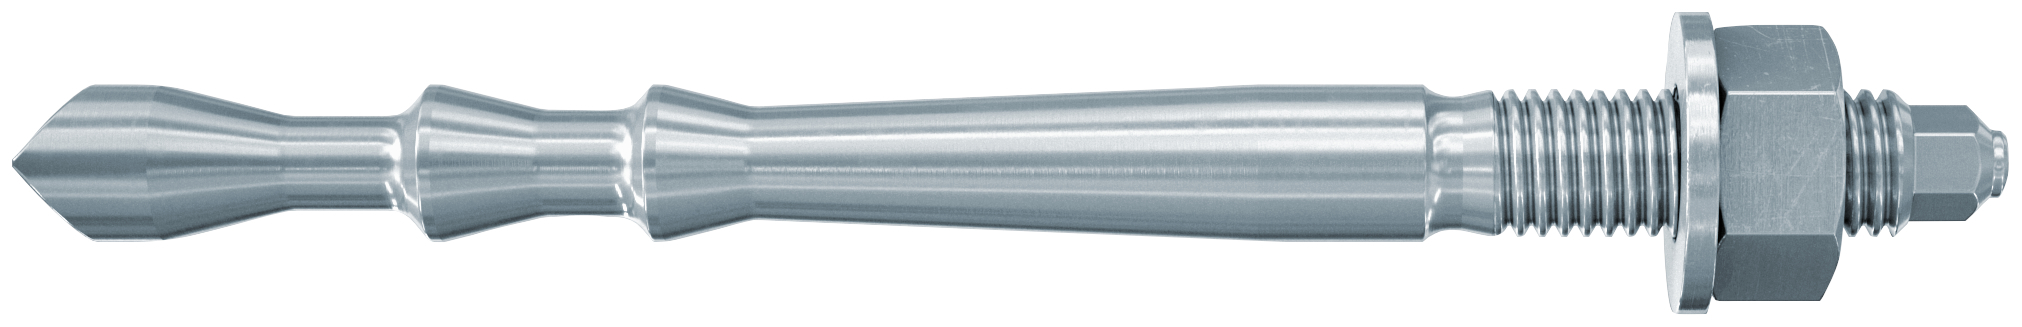 fischer Barra multicono in acciaio FHB II-A L M10x95/100 per ancorante chimico FIS HB (1 Pz.) Barra multicono lunga in acciaio zincato classe 8.8. Massime prestazioni a trazione in calcestruzzo fessurato e a ridotte distanze dai bordi..